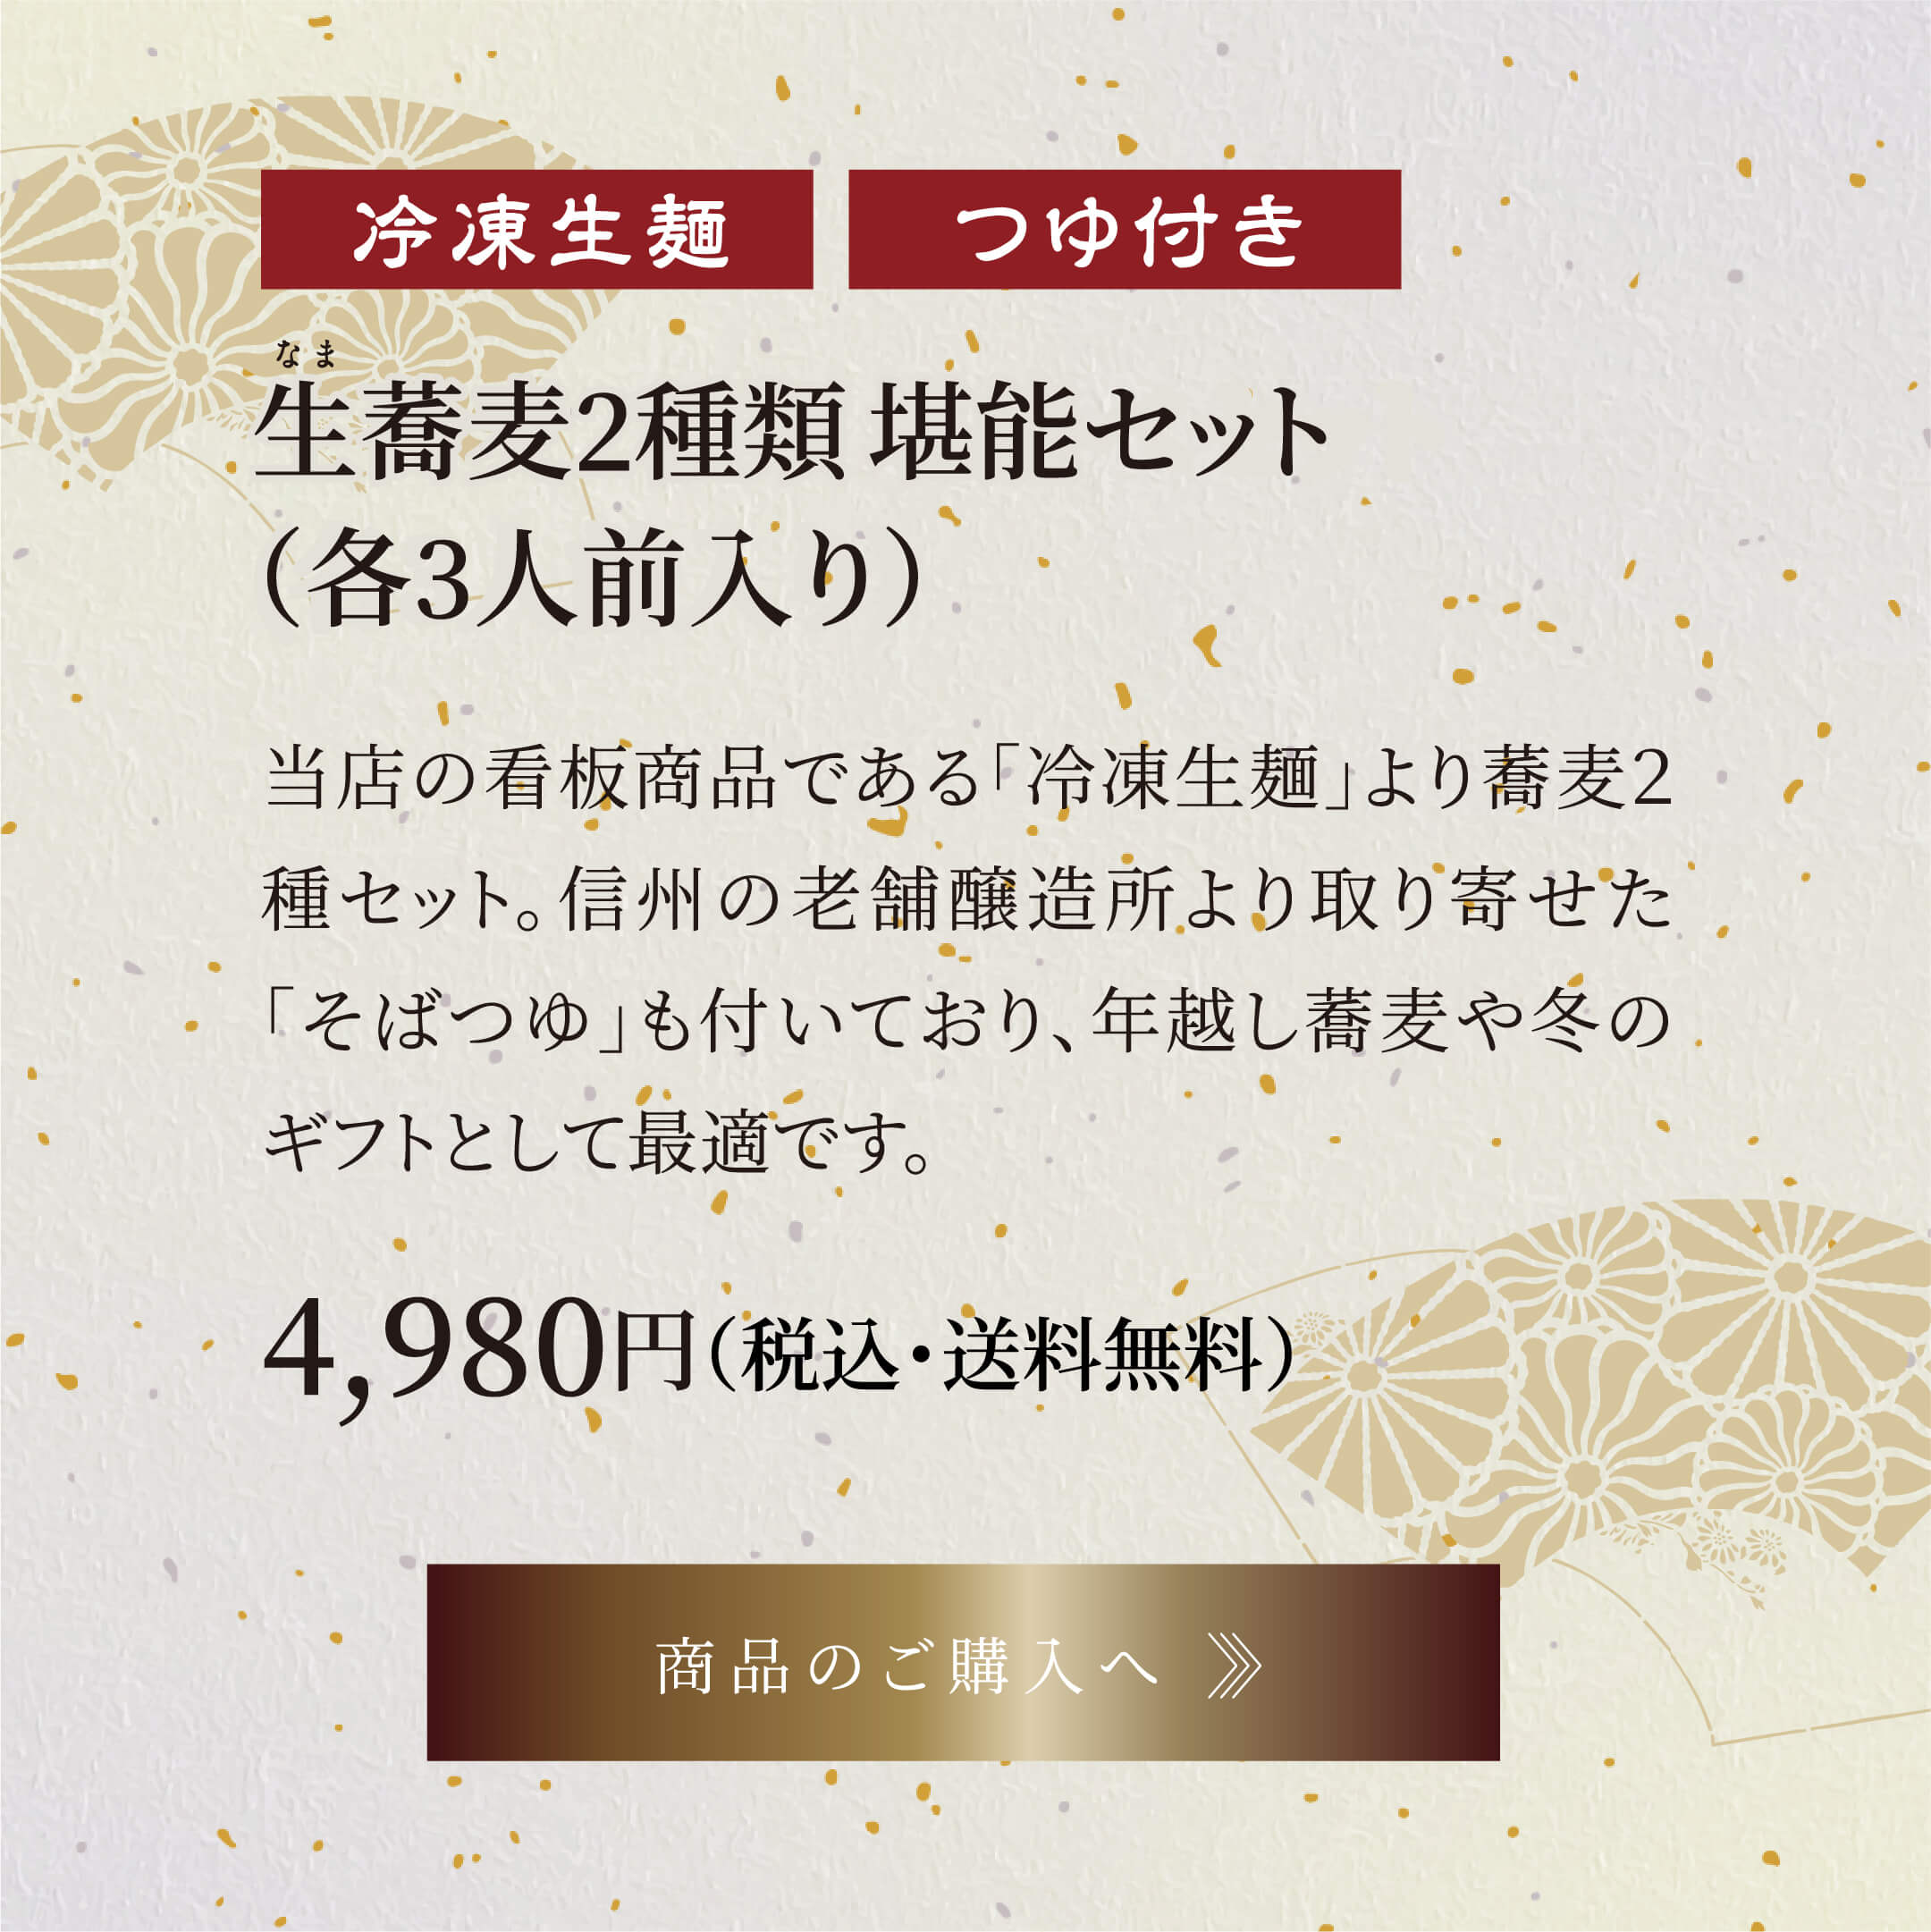 生蕎麦2種類堪能セット(各3人前入り) 4,980円(税込・送料無料)